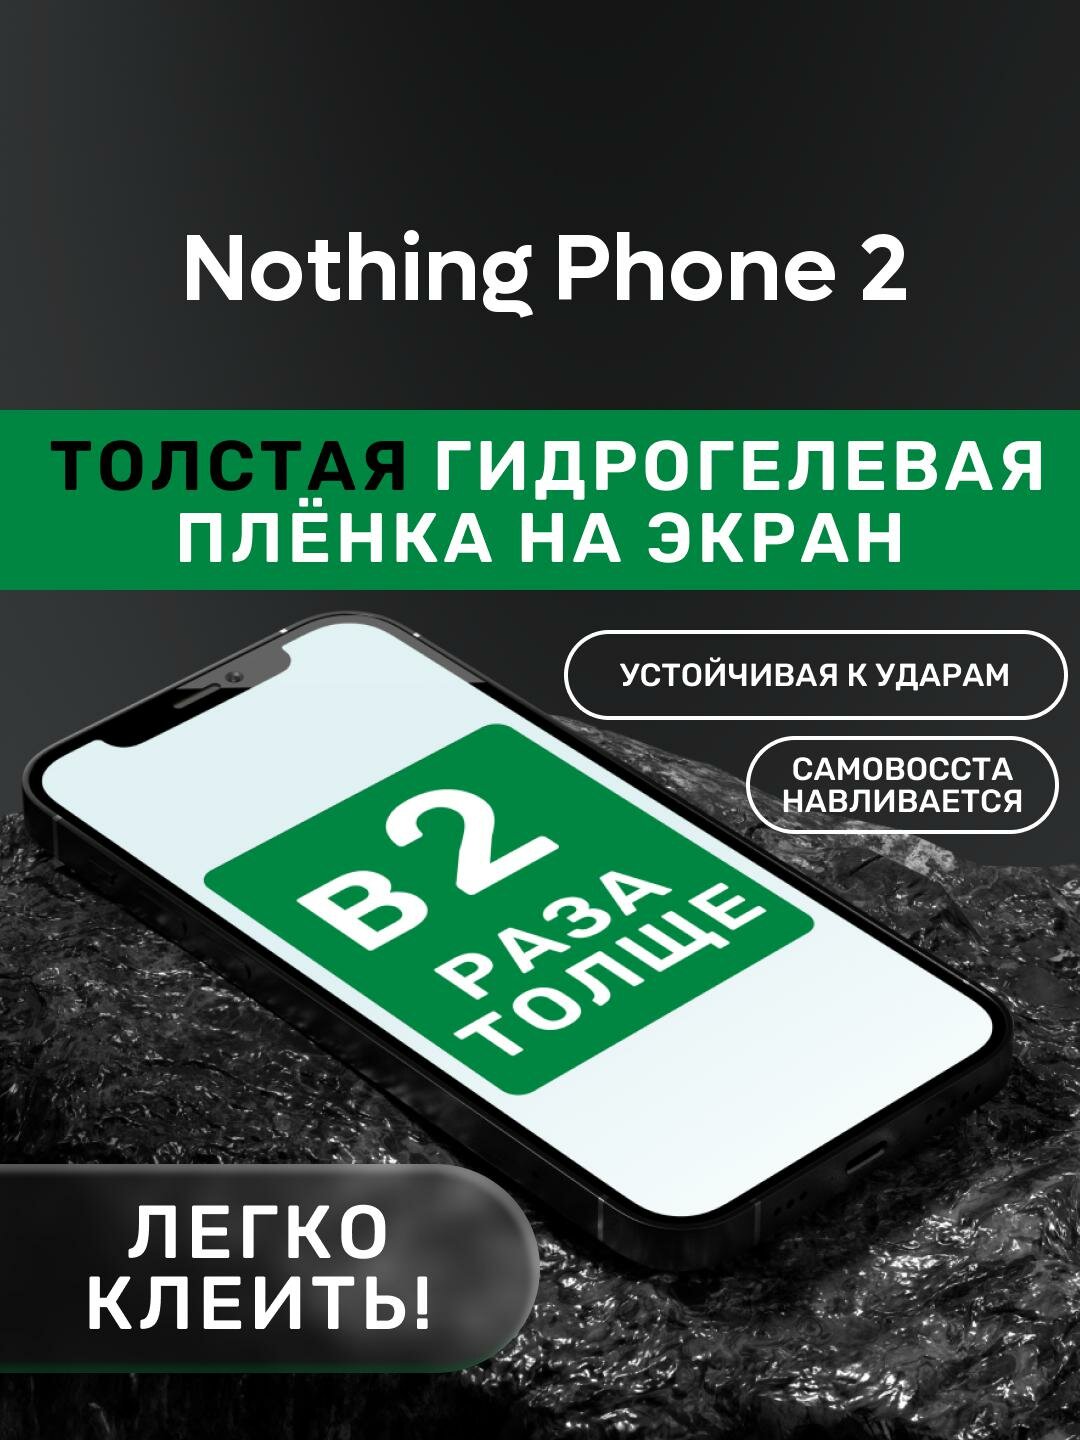 Гидрогелевая утолщённая защитная плёнка на экран для Nothing Phone 2